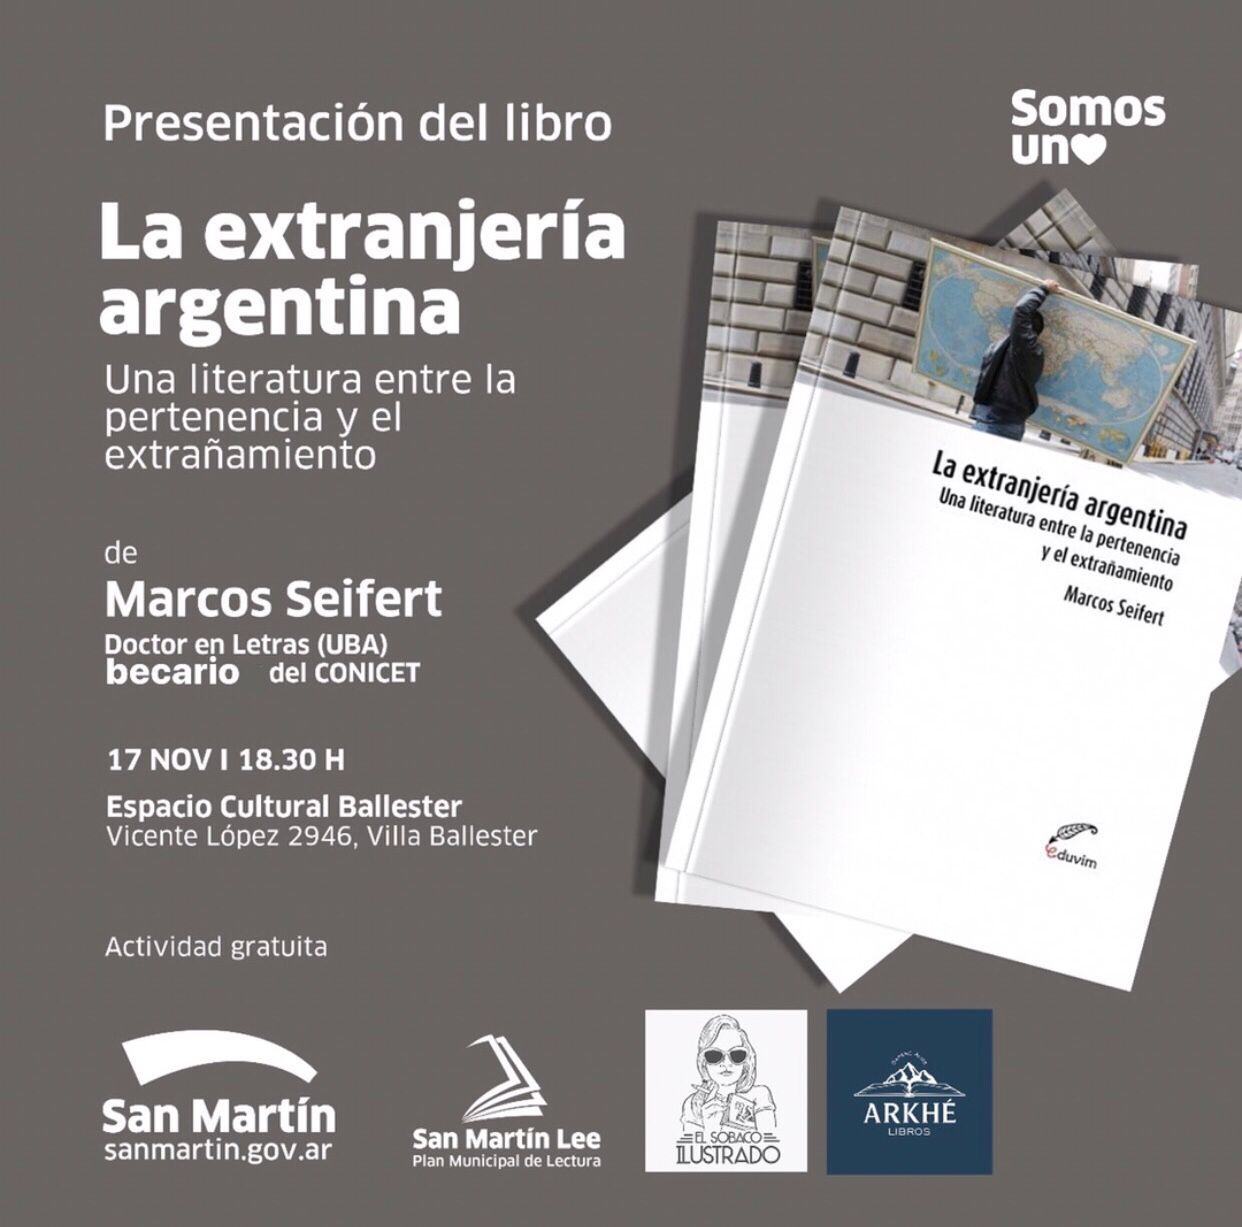 Presentación del libro “La extranjería argentina”